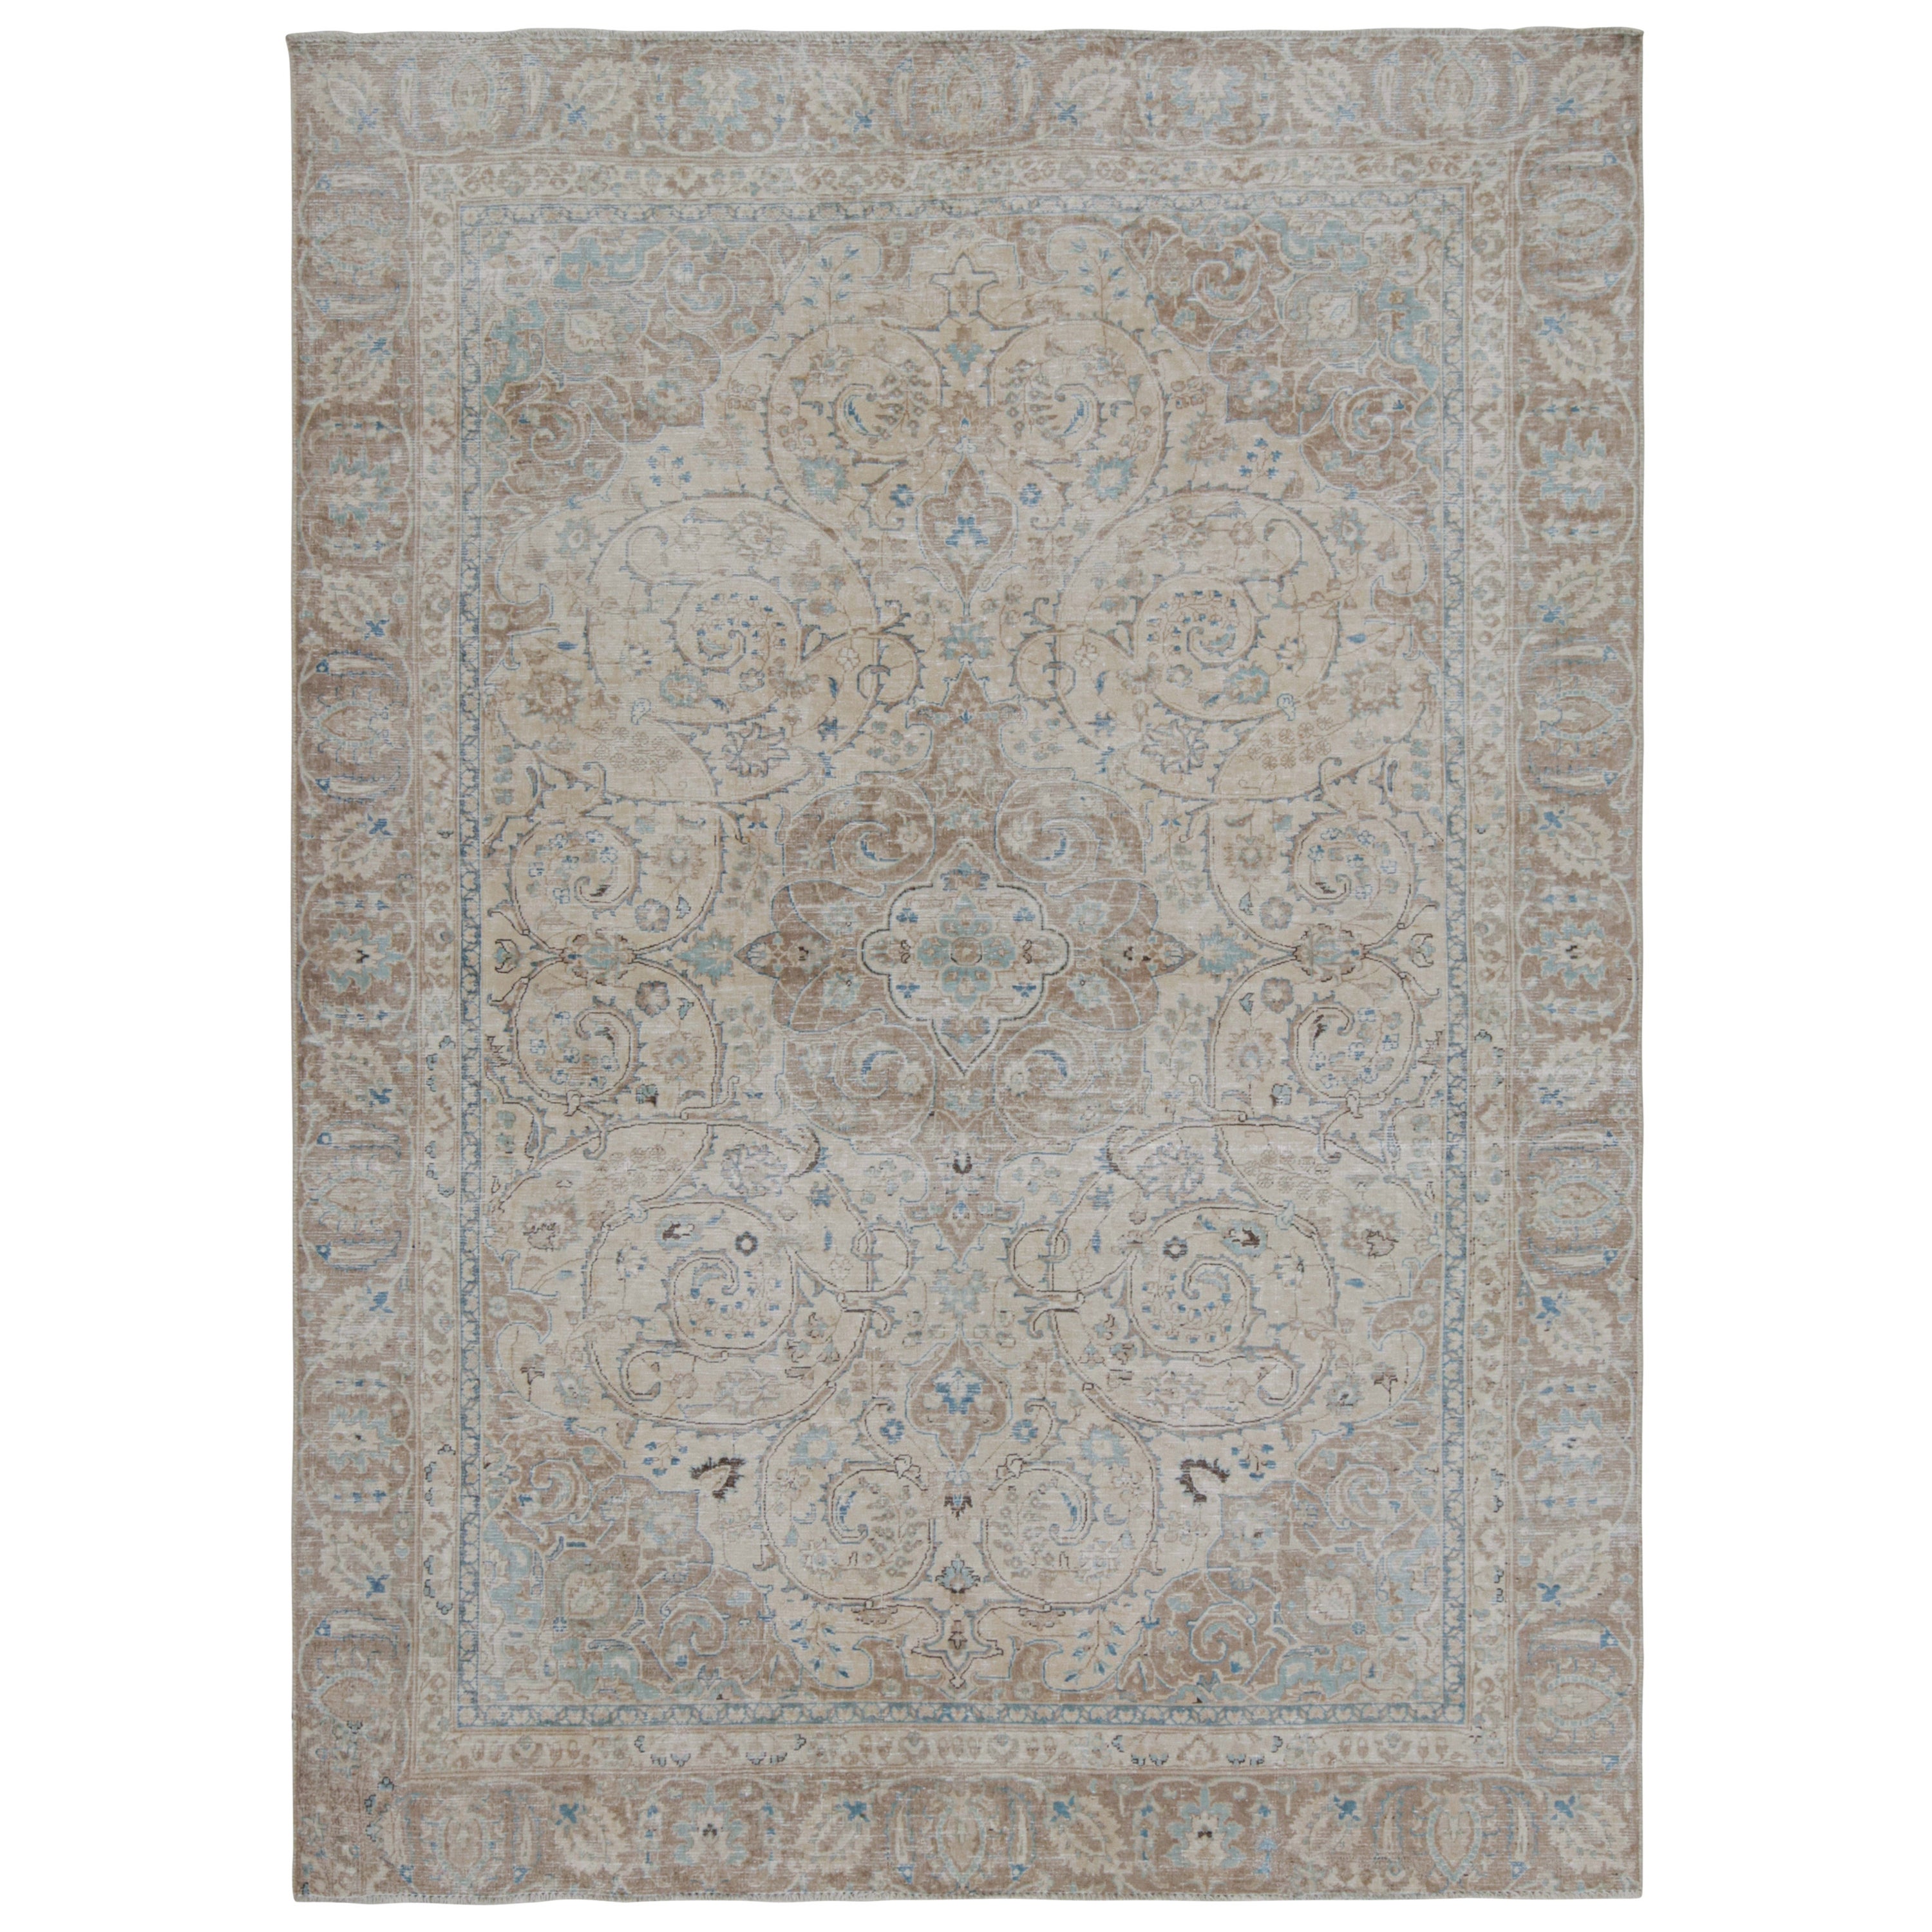 Vintage Tabriz rug in Beige, Brown and Blue Floral Patterns by Rug & Kilim For Sale